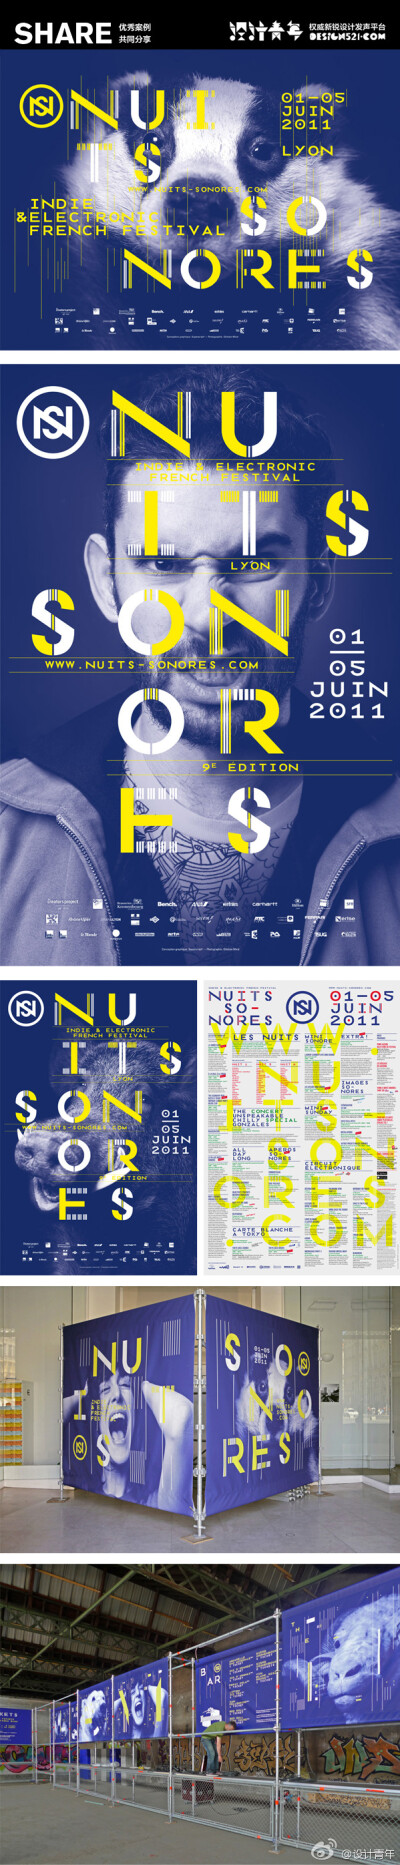 【Nuits Sonores 2011视觉设计】 Conception graphique, identité visuelle et campagne de communication du festival Nuits Sonores. Festival de musique indie et électronique, Lyon.